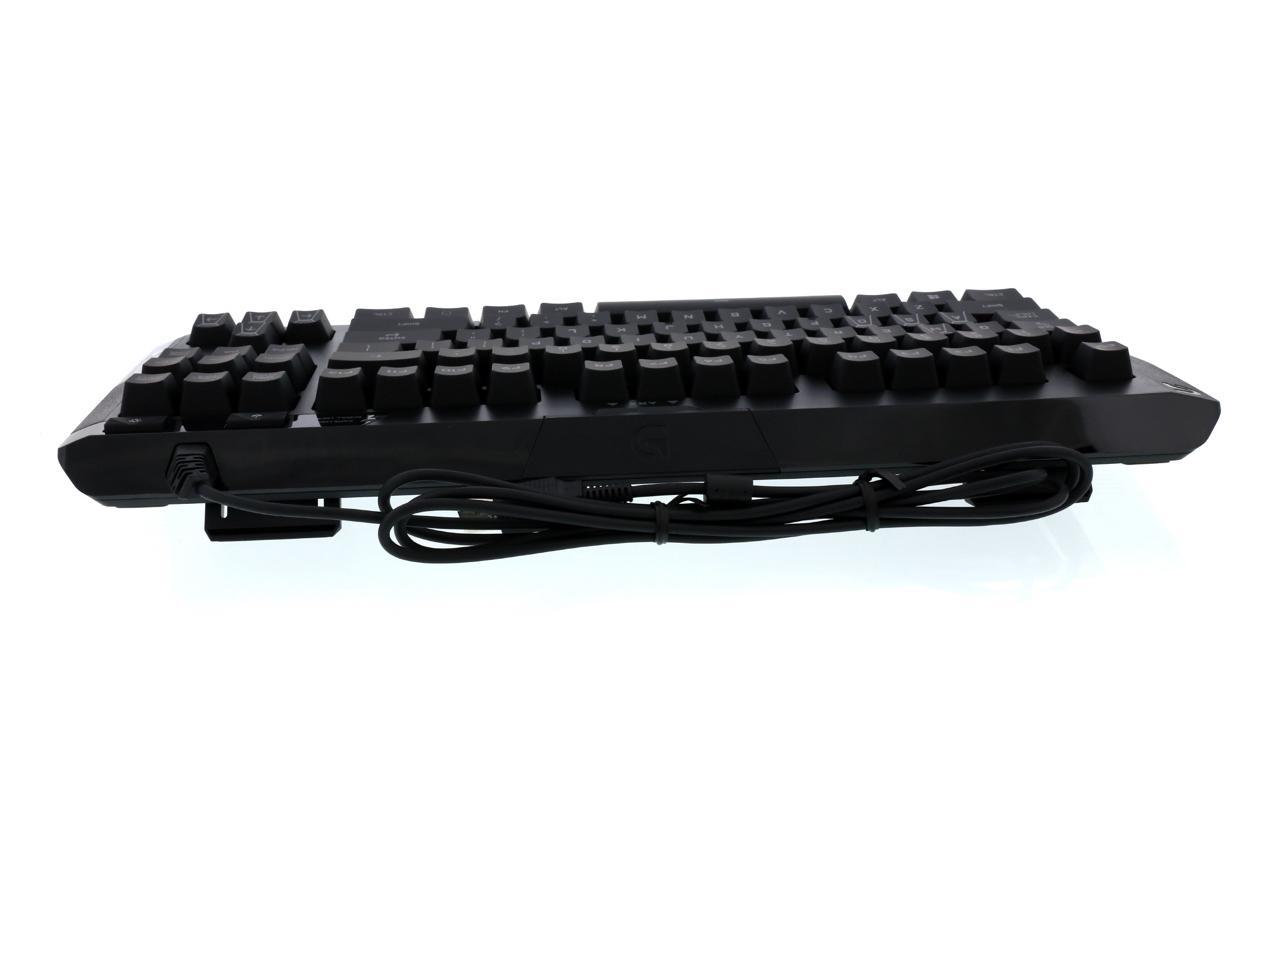 Logitech G410 Atlas Spectrum RGB Tenkeyless Gaming Keyboard